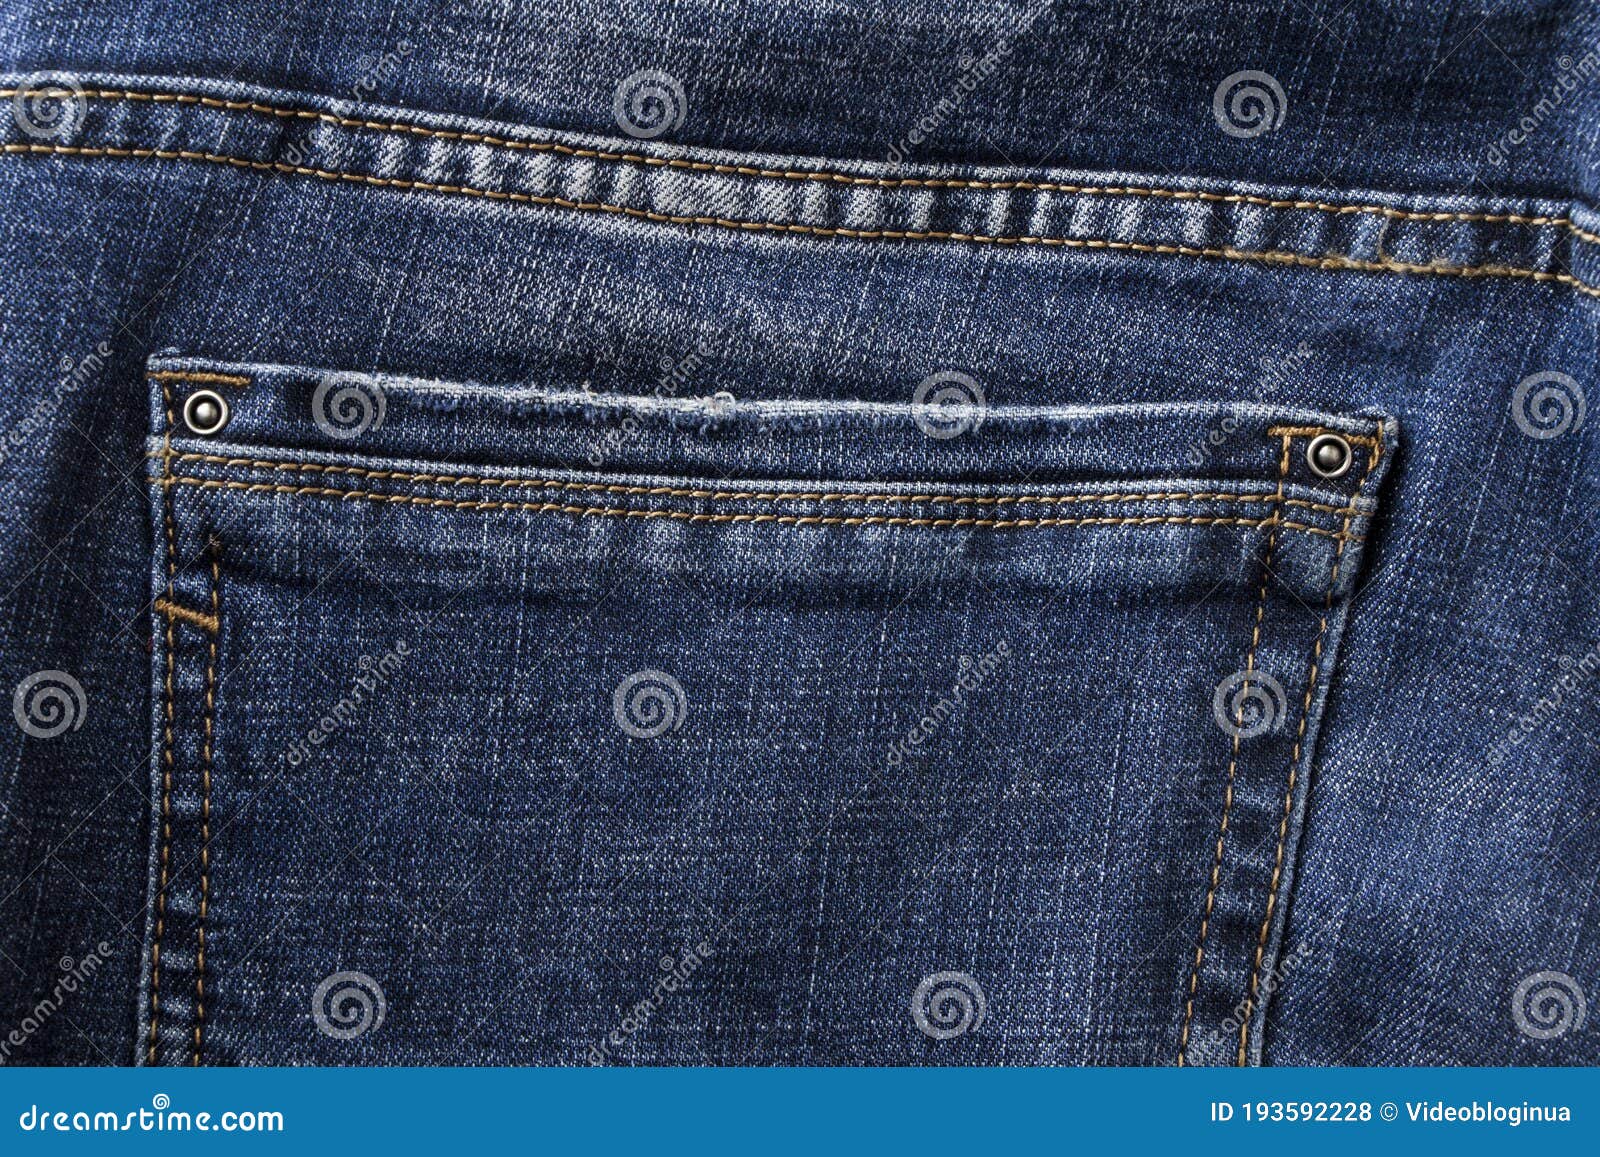 Back Pocket of Blue Jeans. Denim Pants Pocket. Stock Photo - Image of ...